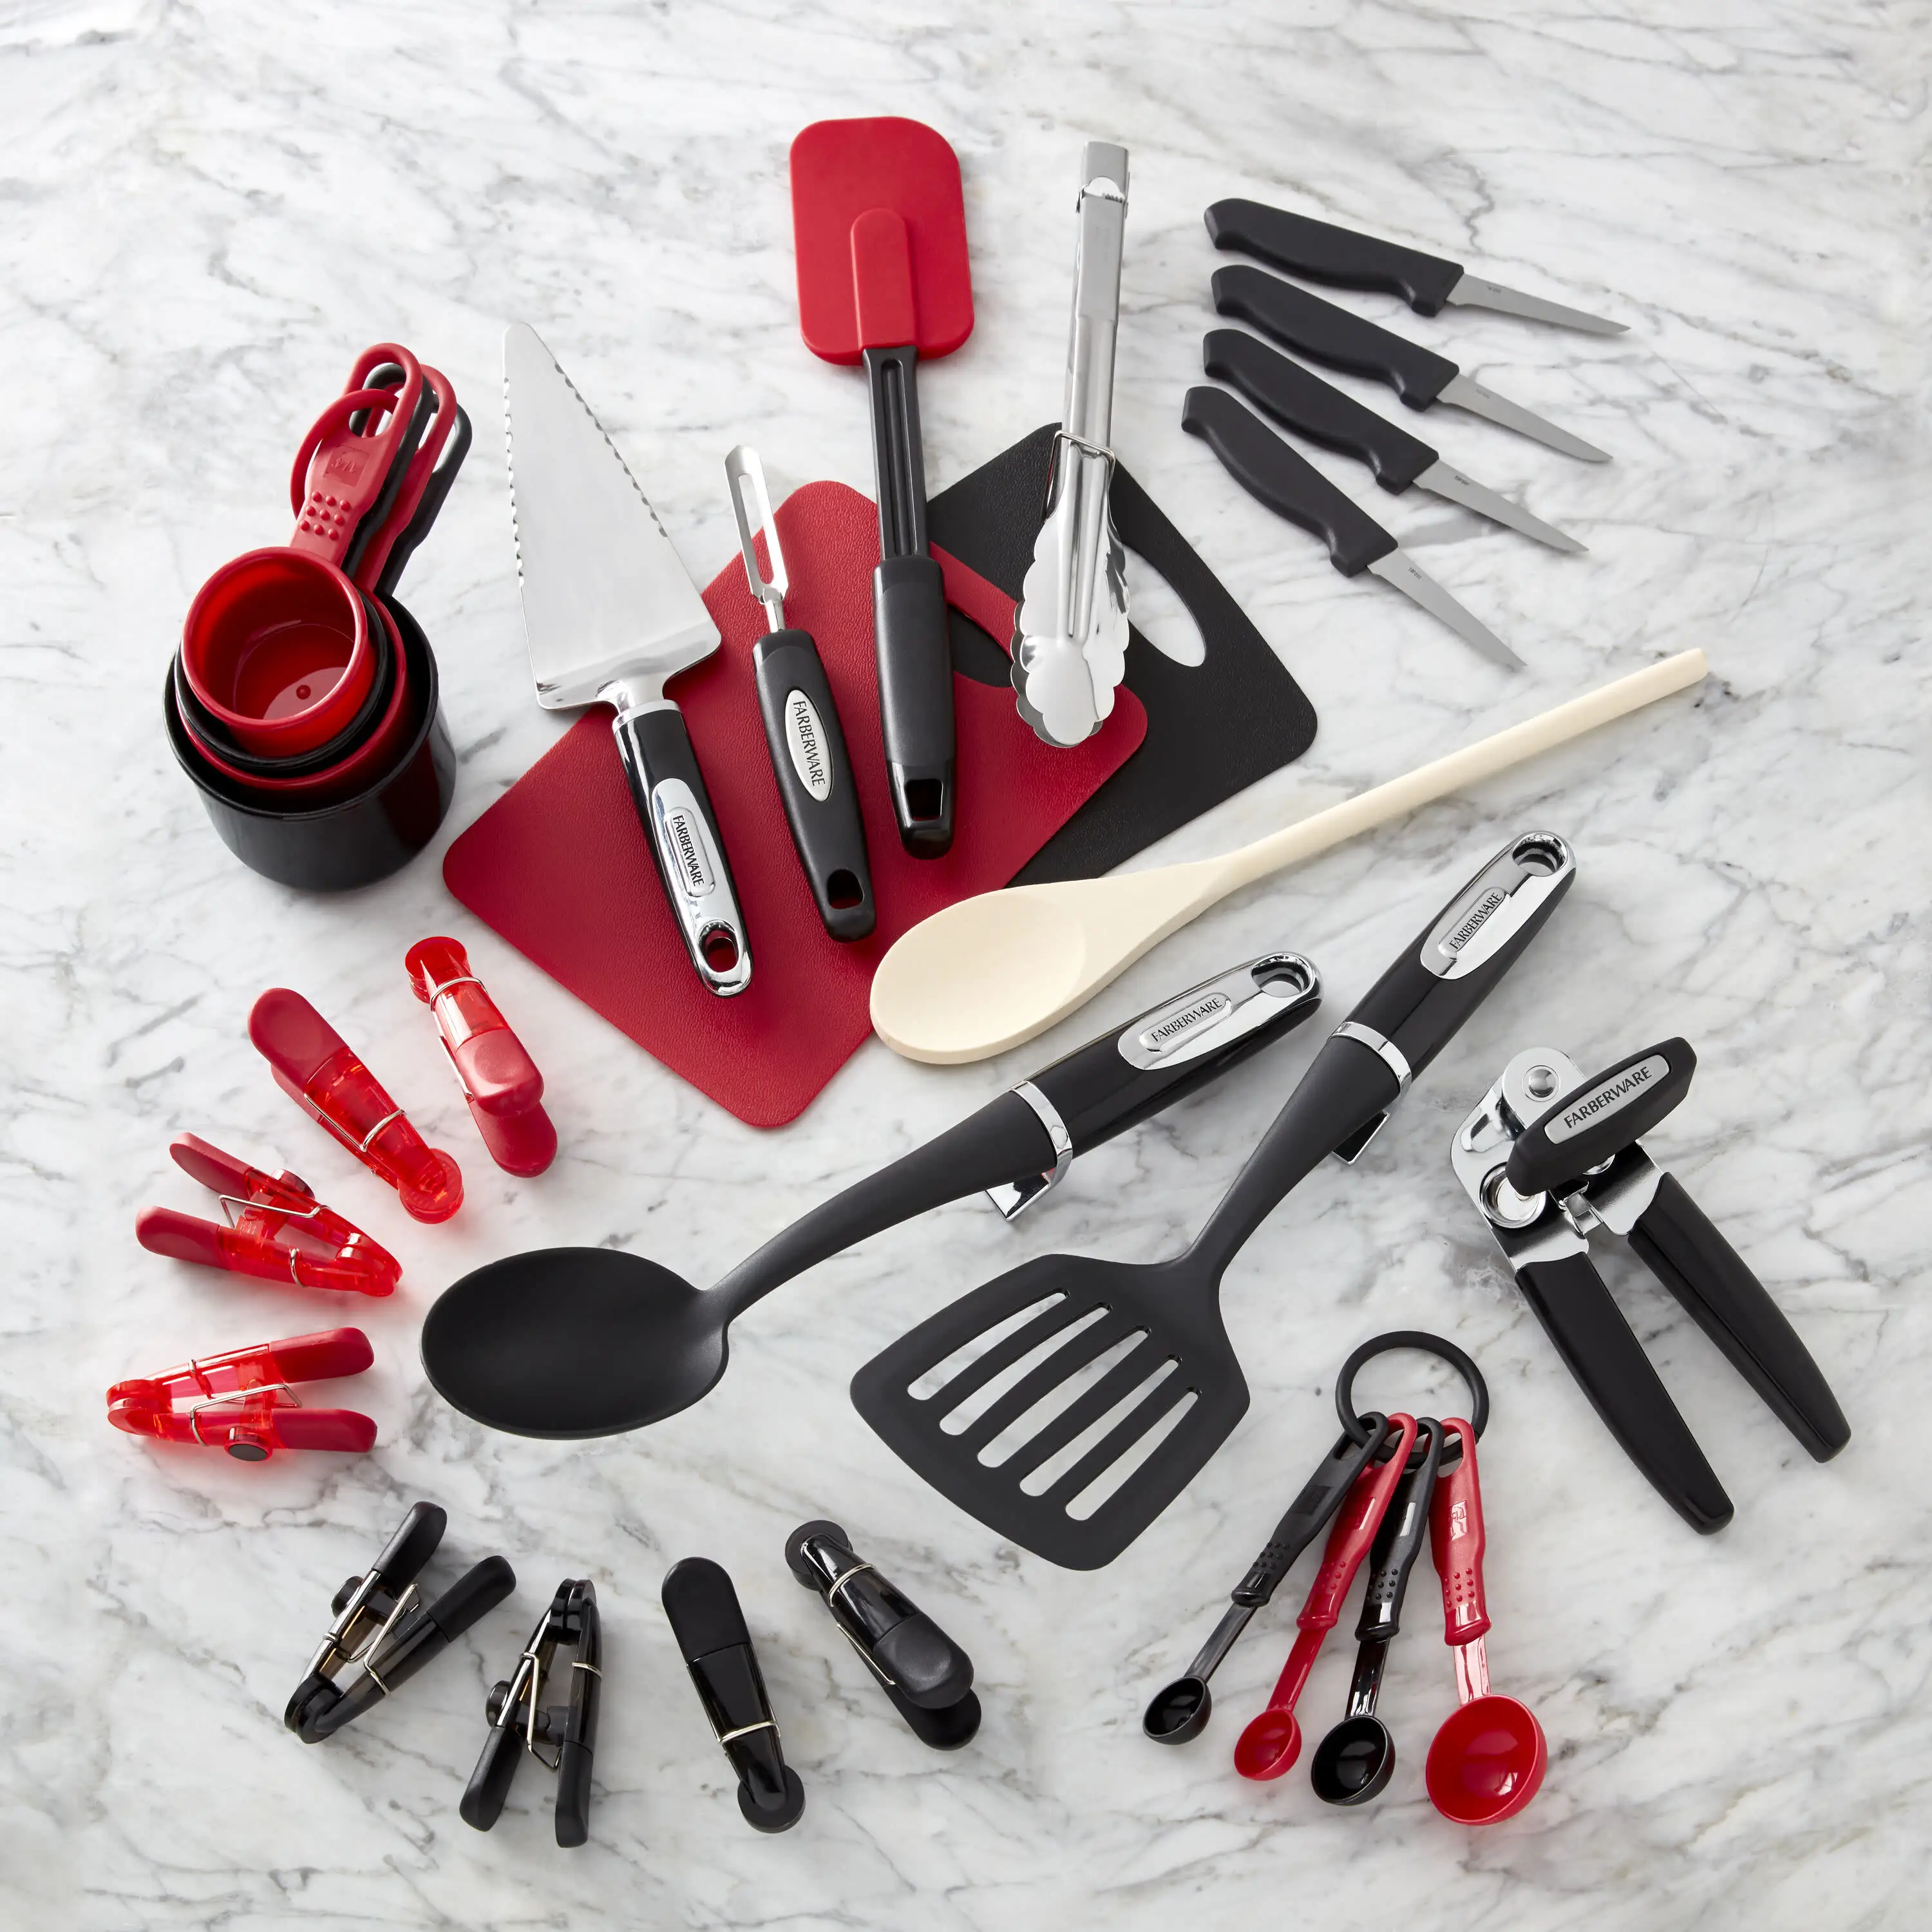 

Профессиональный черный и красный кухонный инструмент и гаджет из 30 предметов, набор кухонной утвари, антипригарная кухонная утварь, аксессуары для кухни C